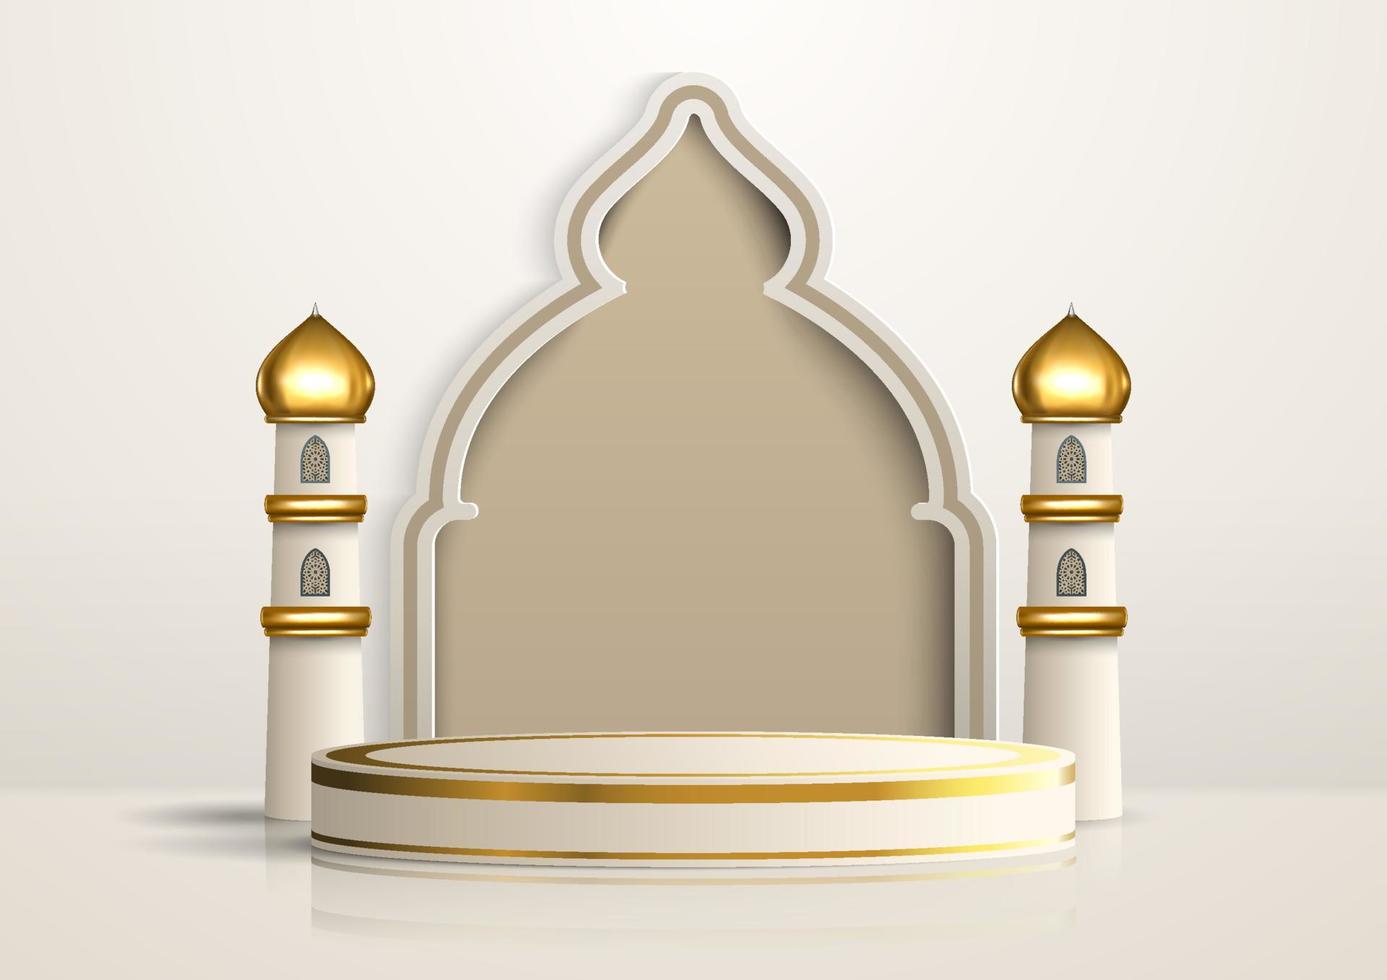 podium d'affichage de produit islamique réaliste avec porte de mosquée et minarets dorés sur fond blanc. illustration islamique 3d pour la publicité, les ventes et les achats en ligne. conception de socle lumineux vecteur